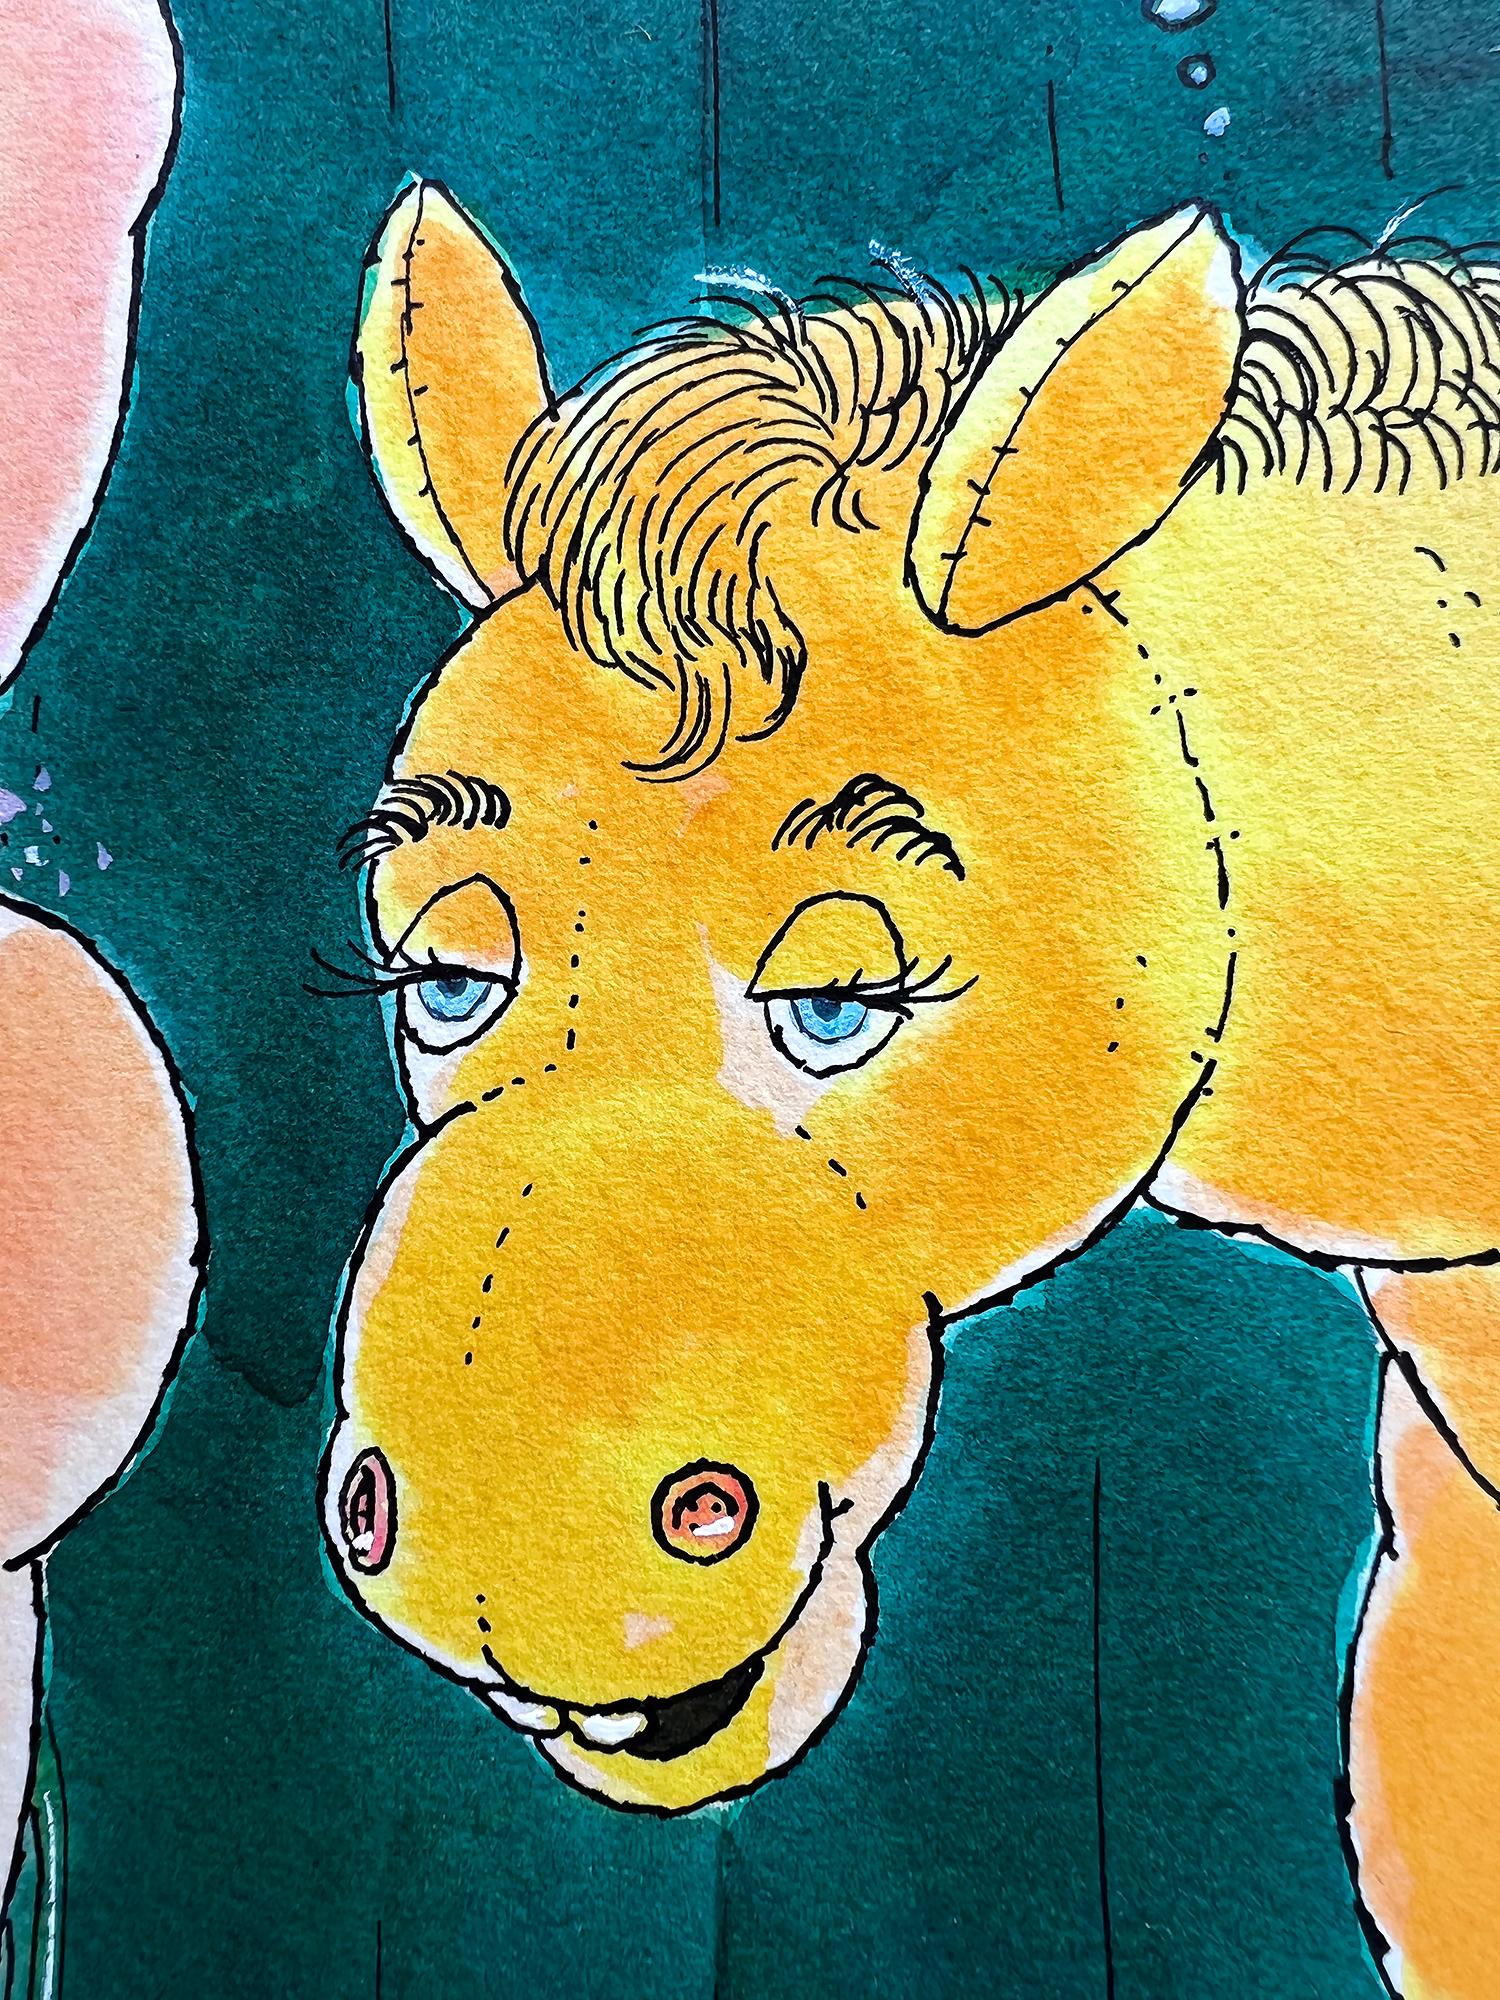 Sexy Akt Show Girl Buttocks Pondered by Show Horse - Sexy Cartoon Mad Magazine (Konzeptionell), Art, von Al Jaffee